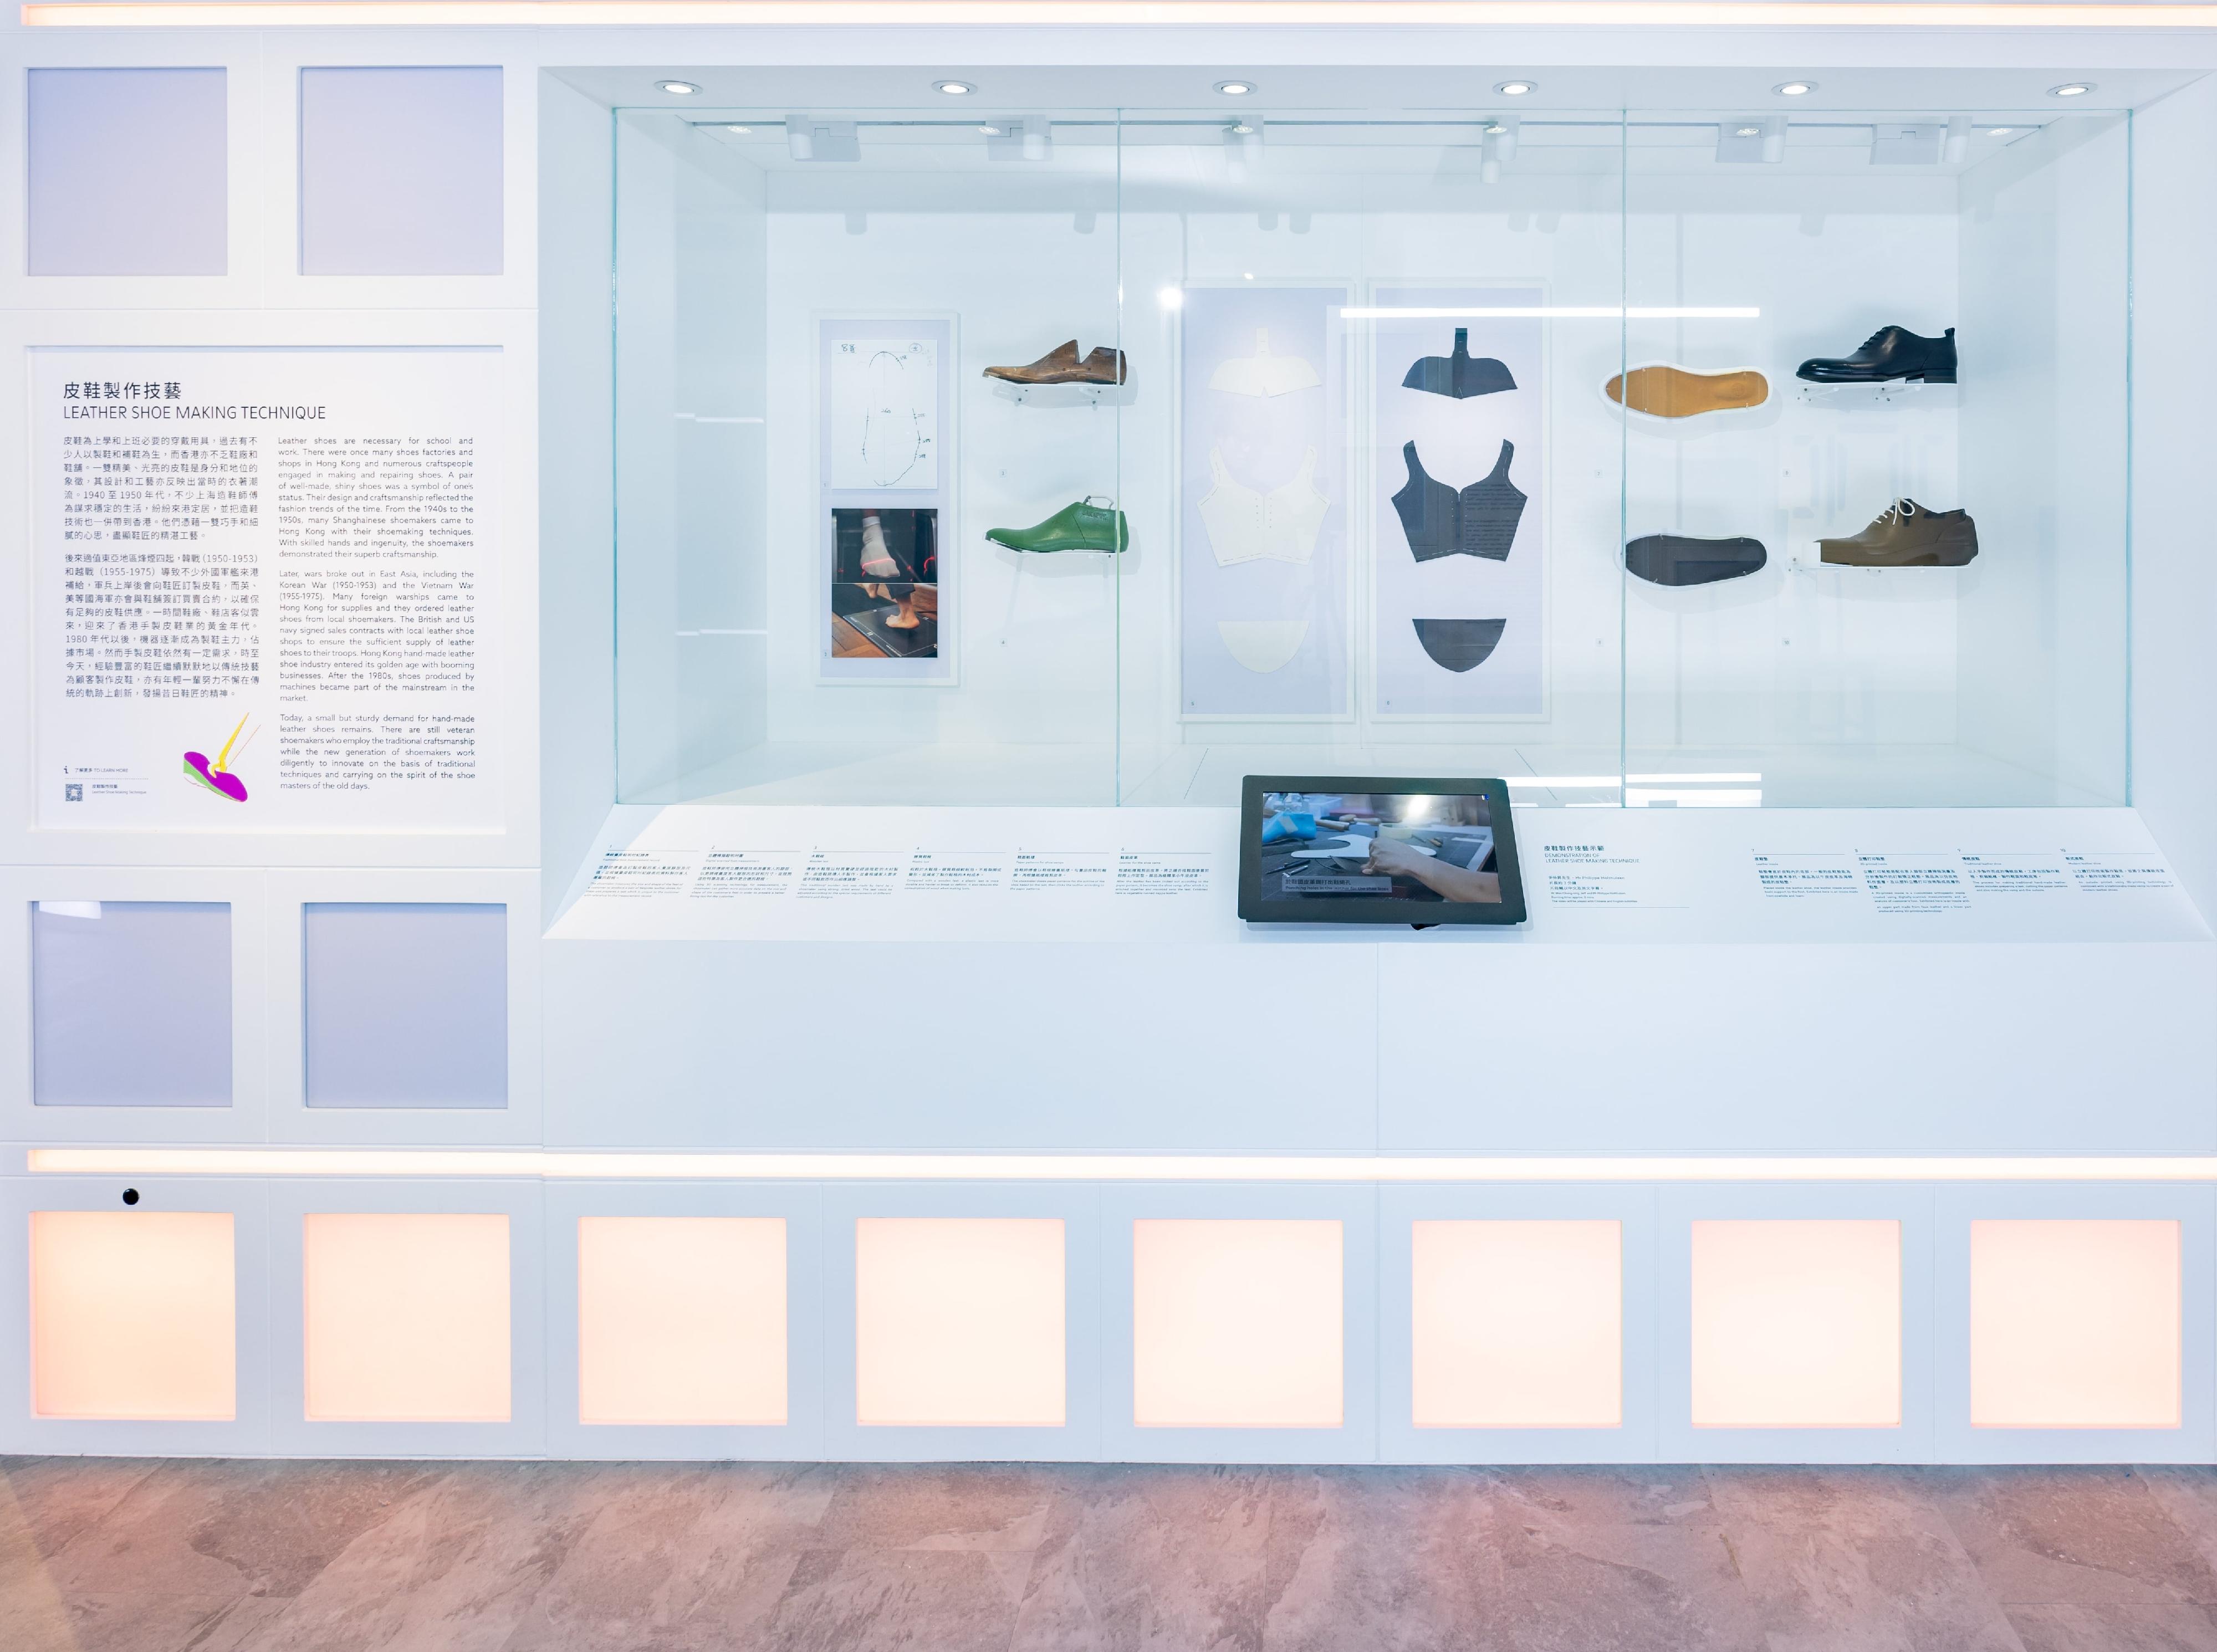 非物質文化遺產辦事處策劃的新展覽「人為．非遺」，明日（五月十九日）起開放予市民參觀。圖示非物質文化遺產項目皮鞋製作技藝的展品。